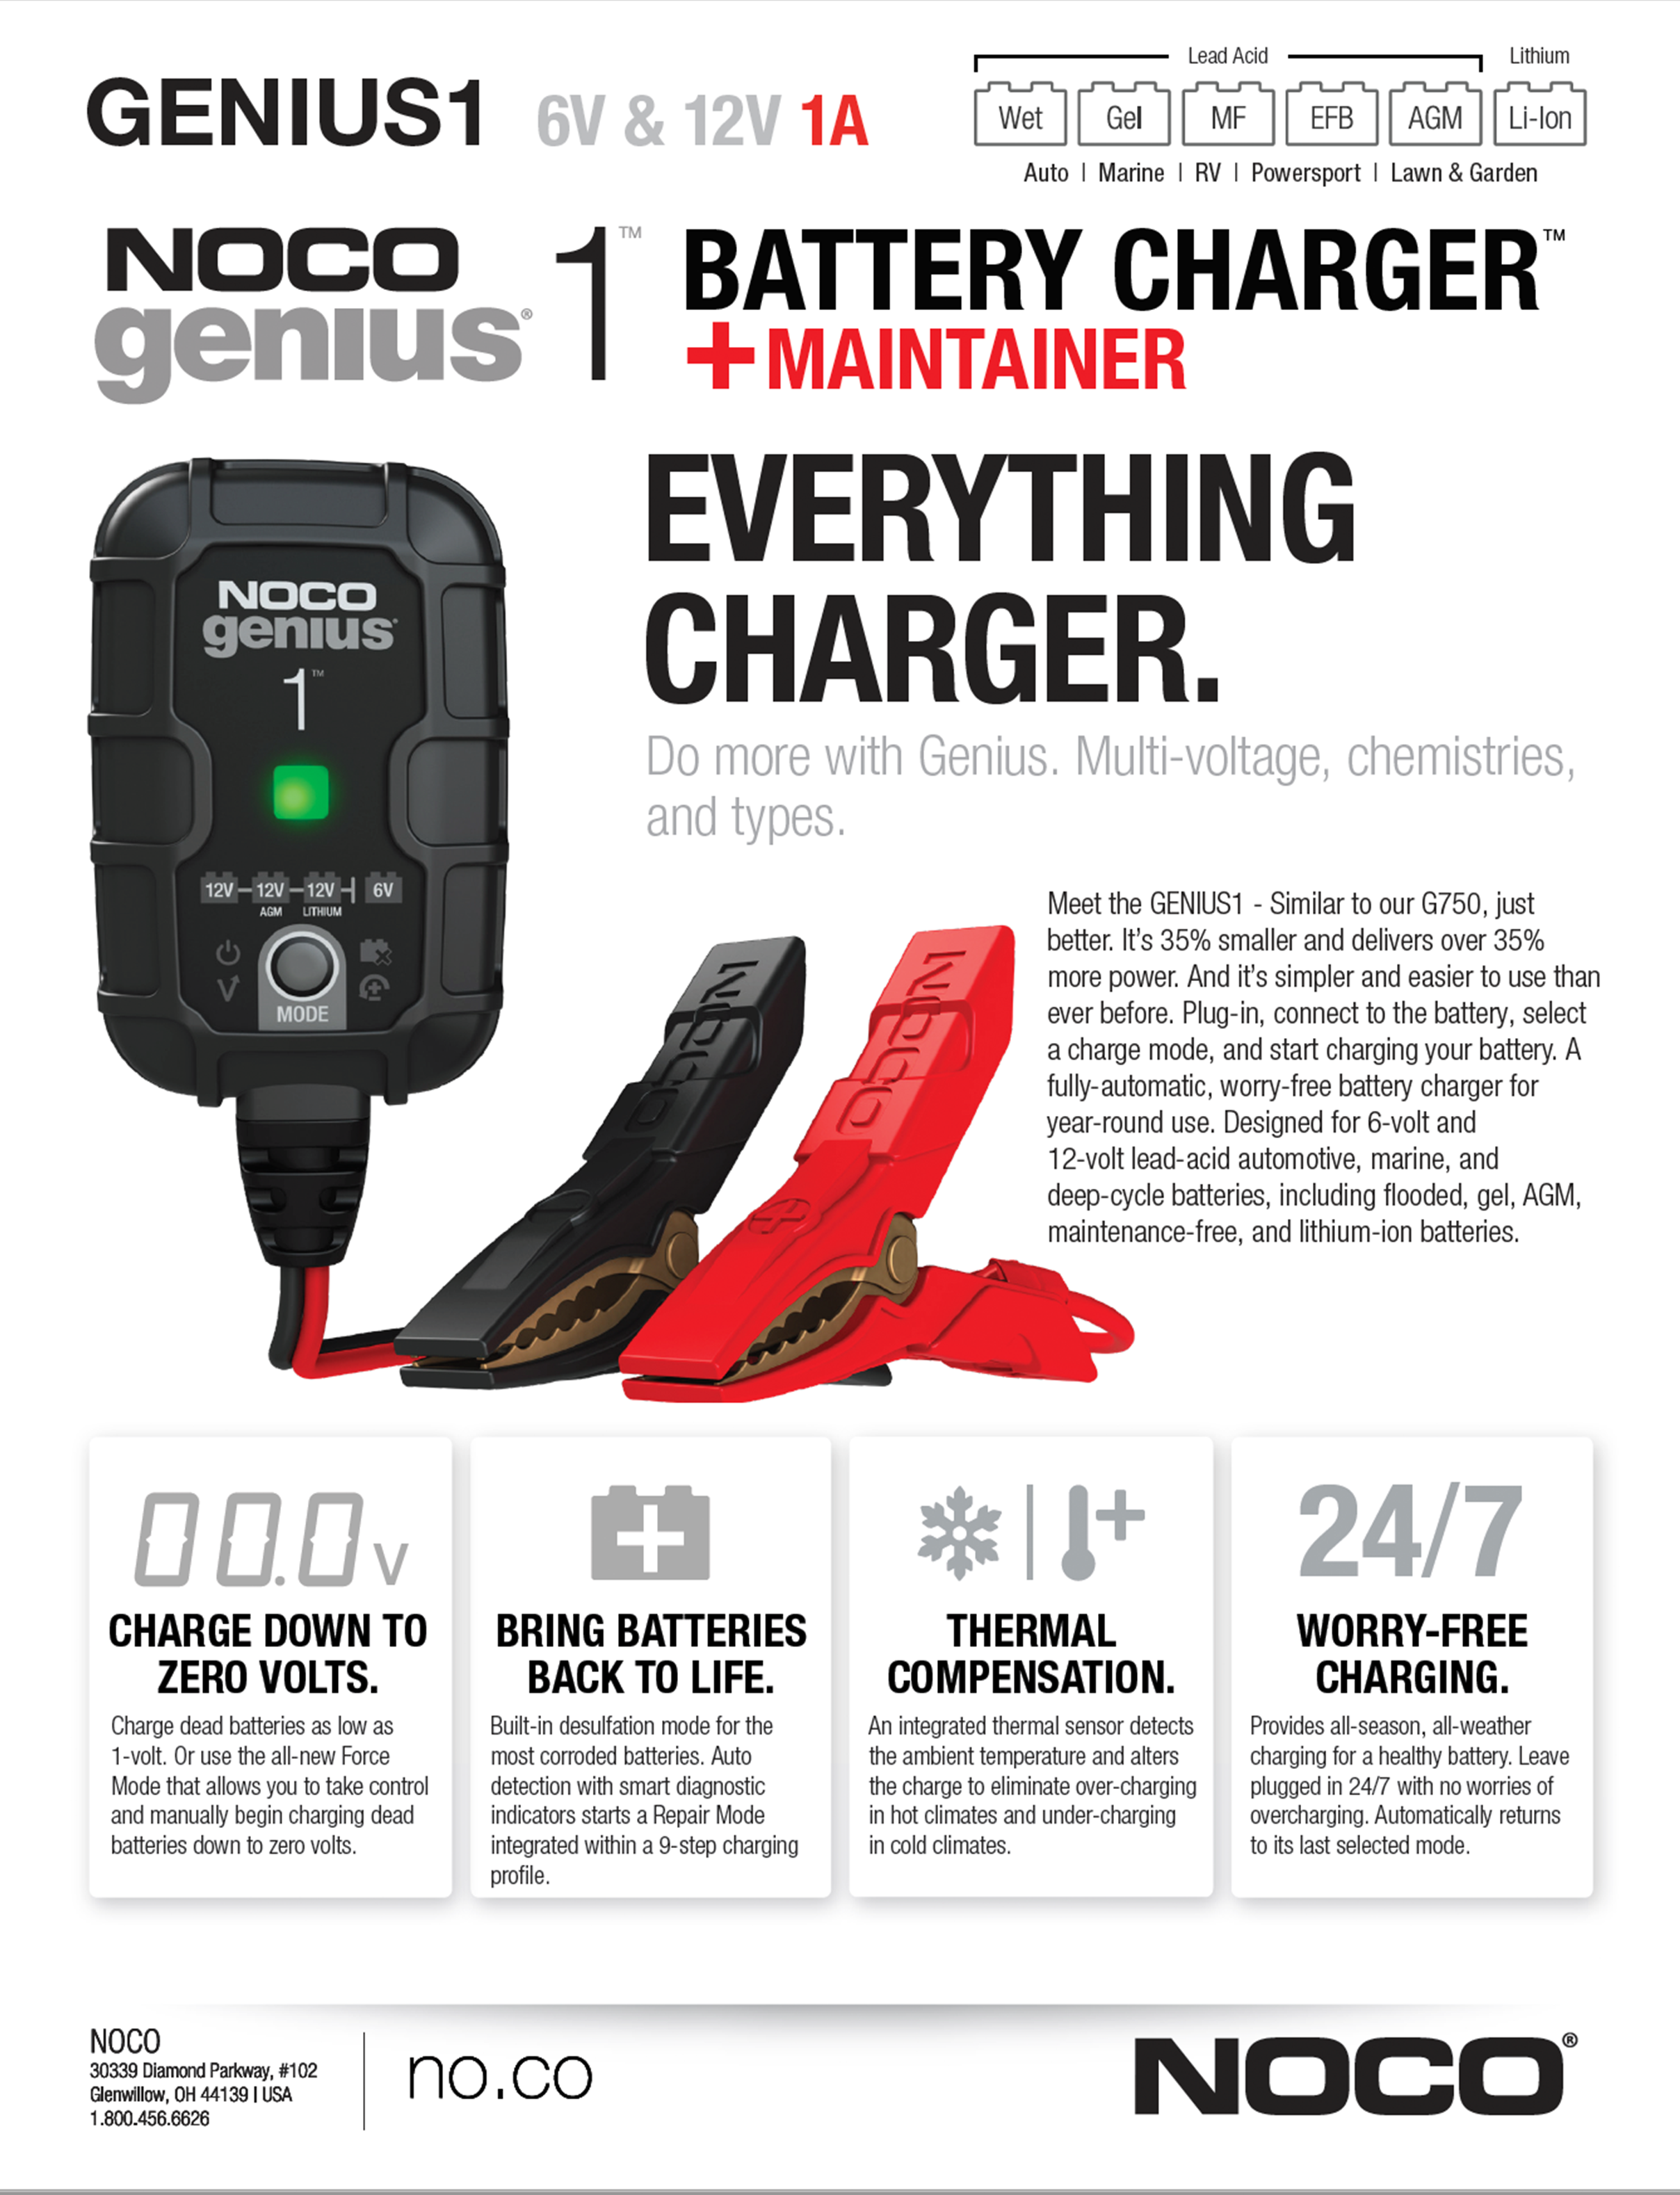 NOCO GENIUS1 NOCO GENIUS1 Smart Battery Chargers